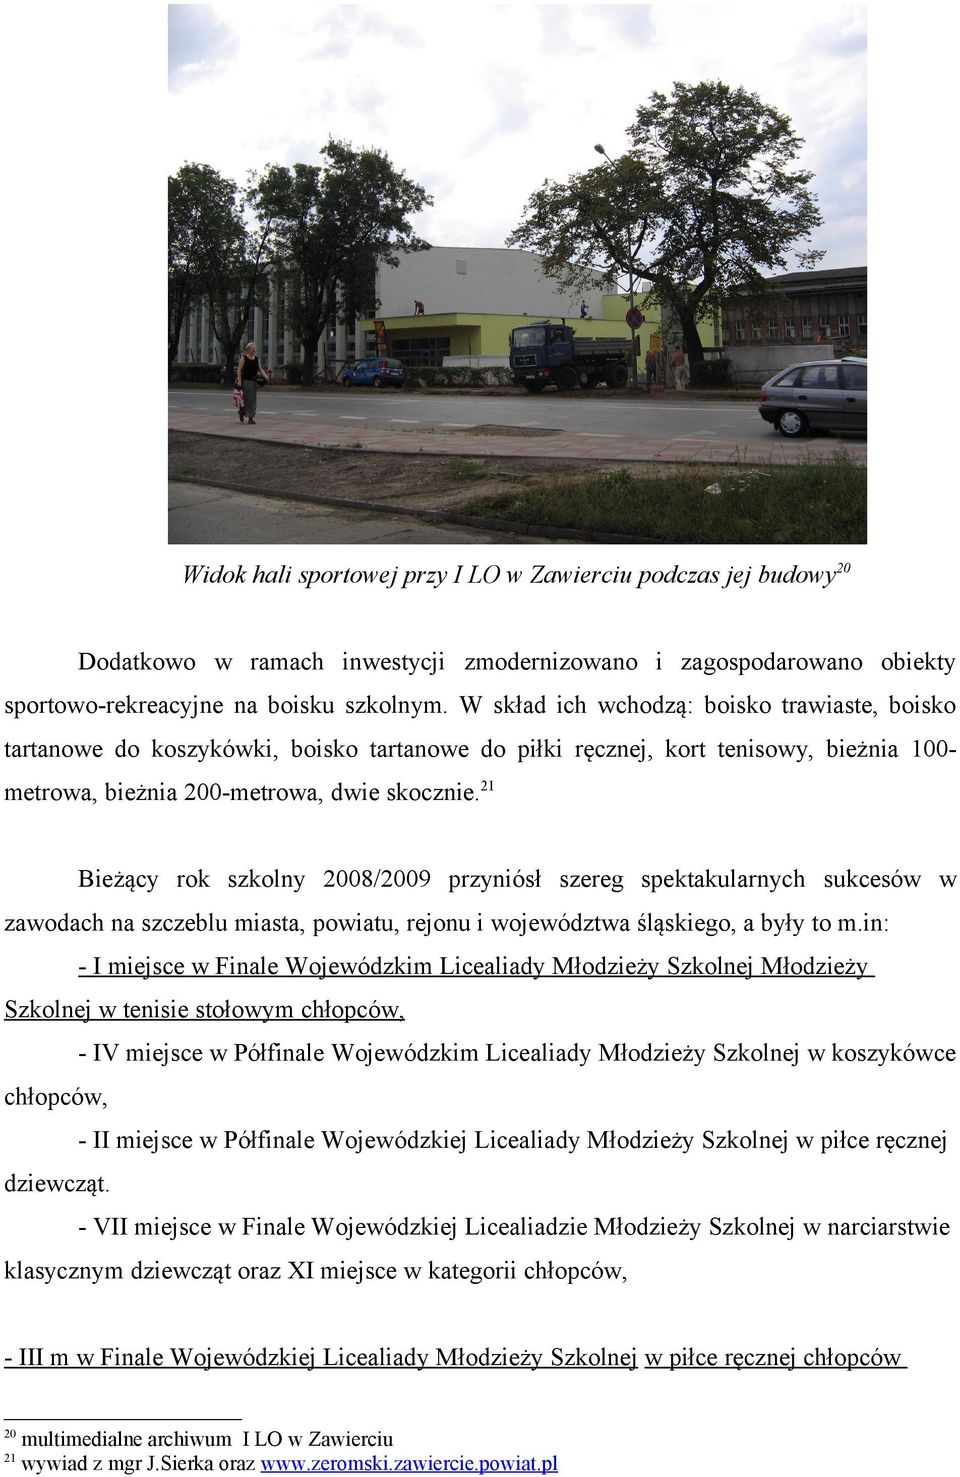 21 Bieżący rok szkolny 2008/2009 przyniósł szereg spektakularnych sukcesów w zawodach na szczeblu miasta, powiatu, rejonu i województwa śląskiego, a były to m.